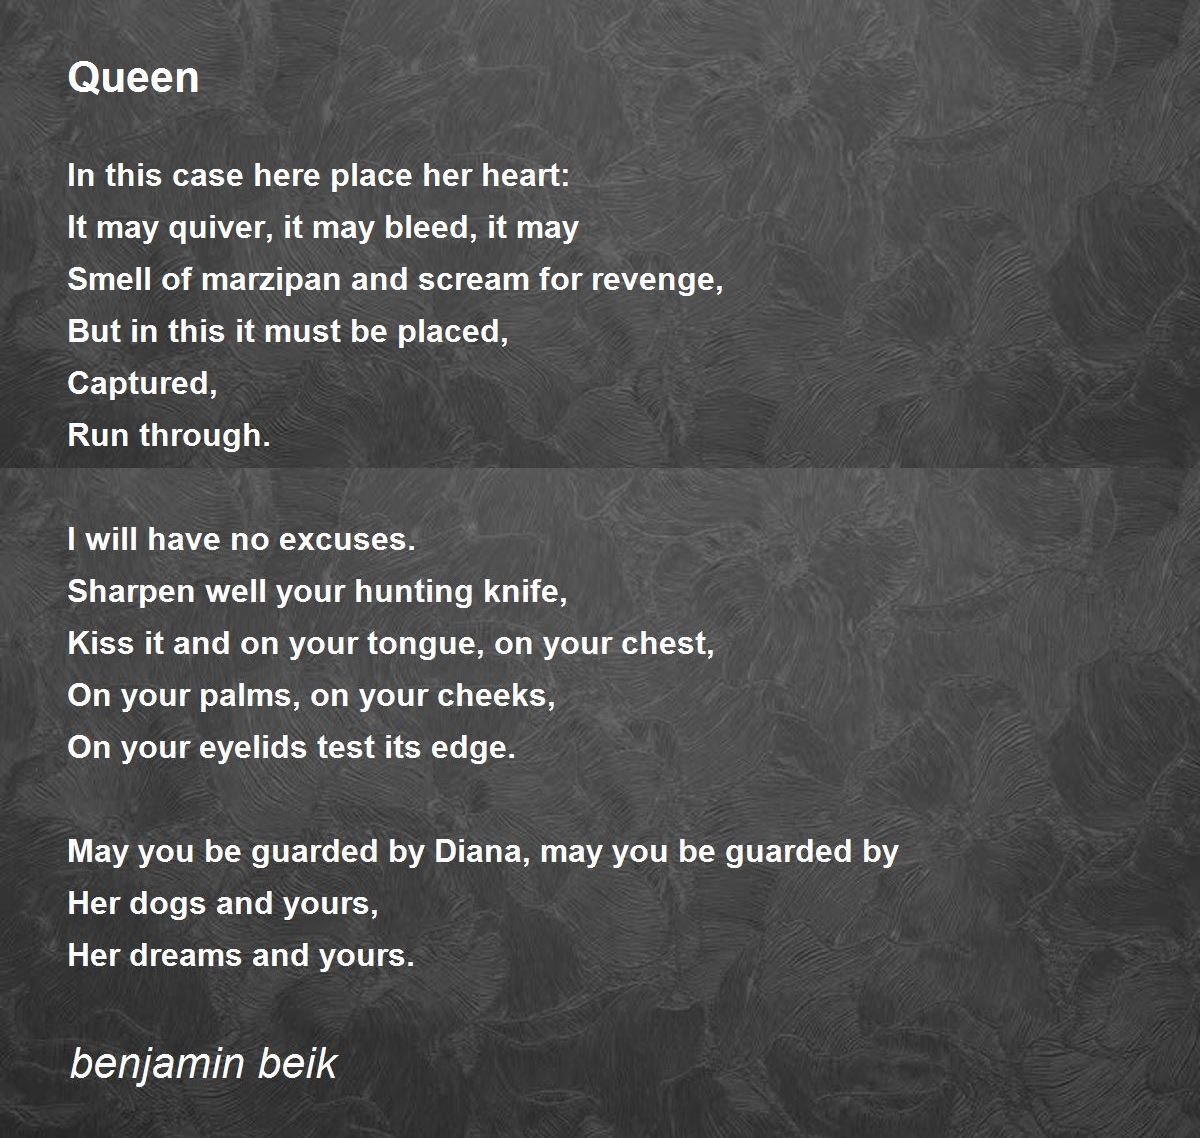 Queen - Queen Poem by benjamin beik